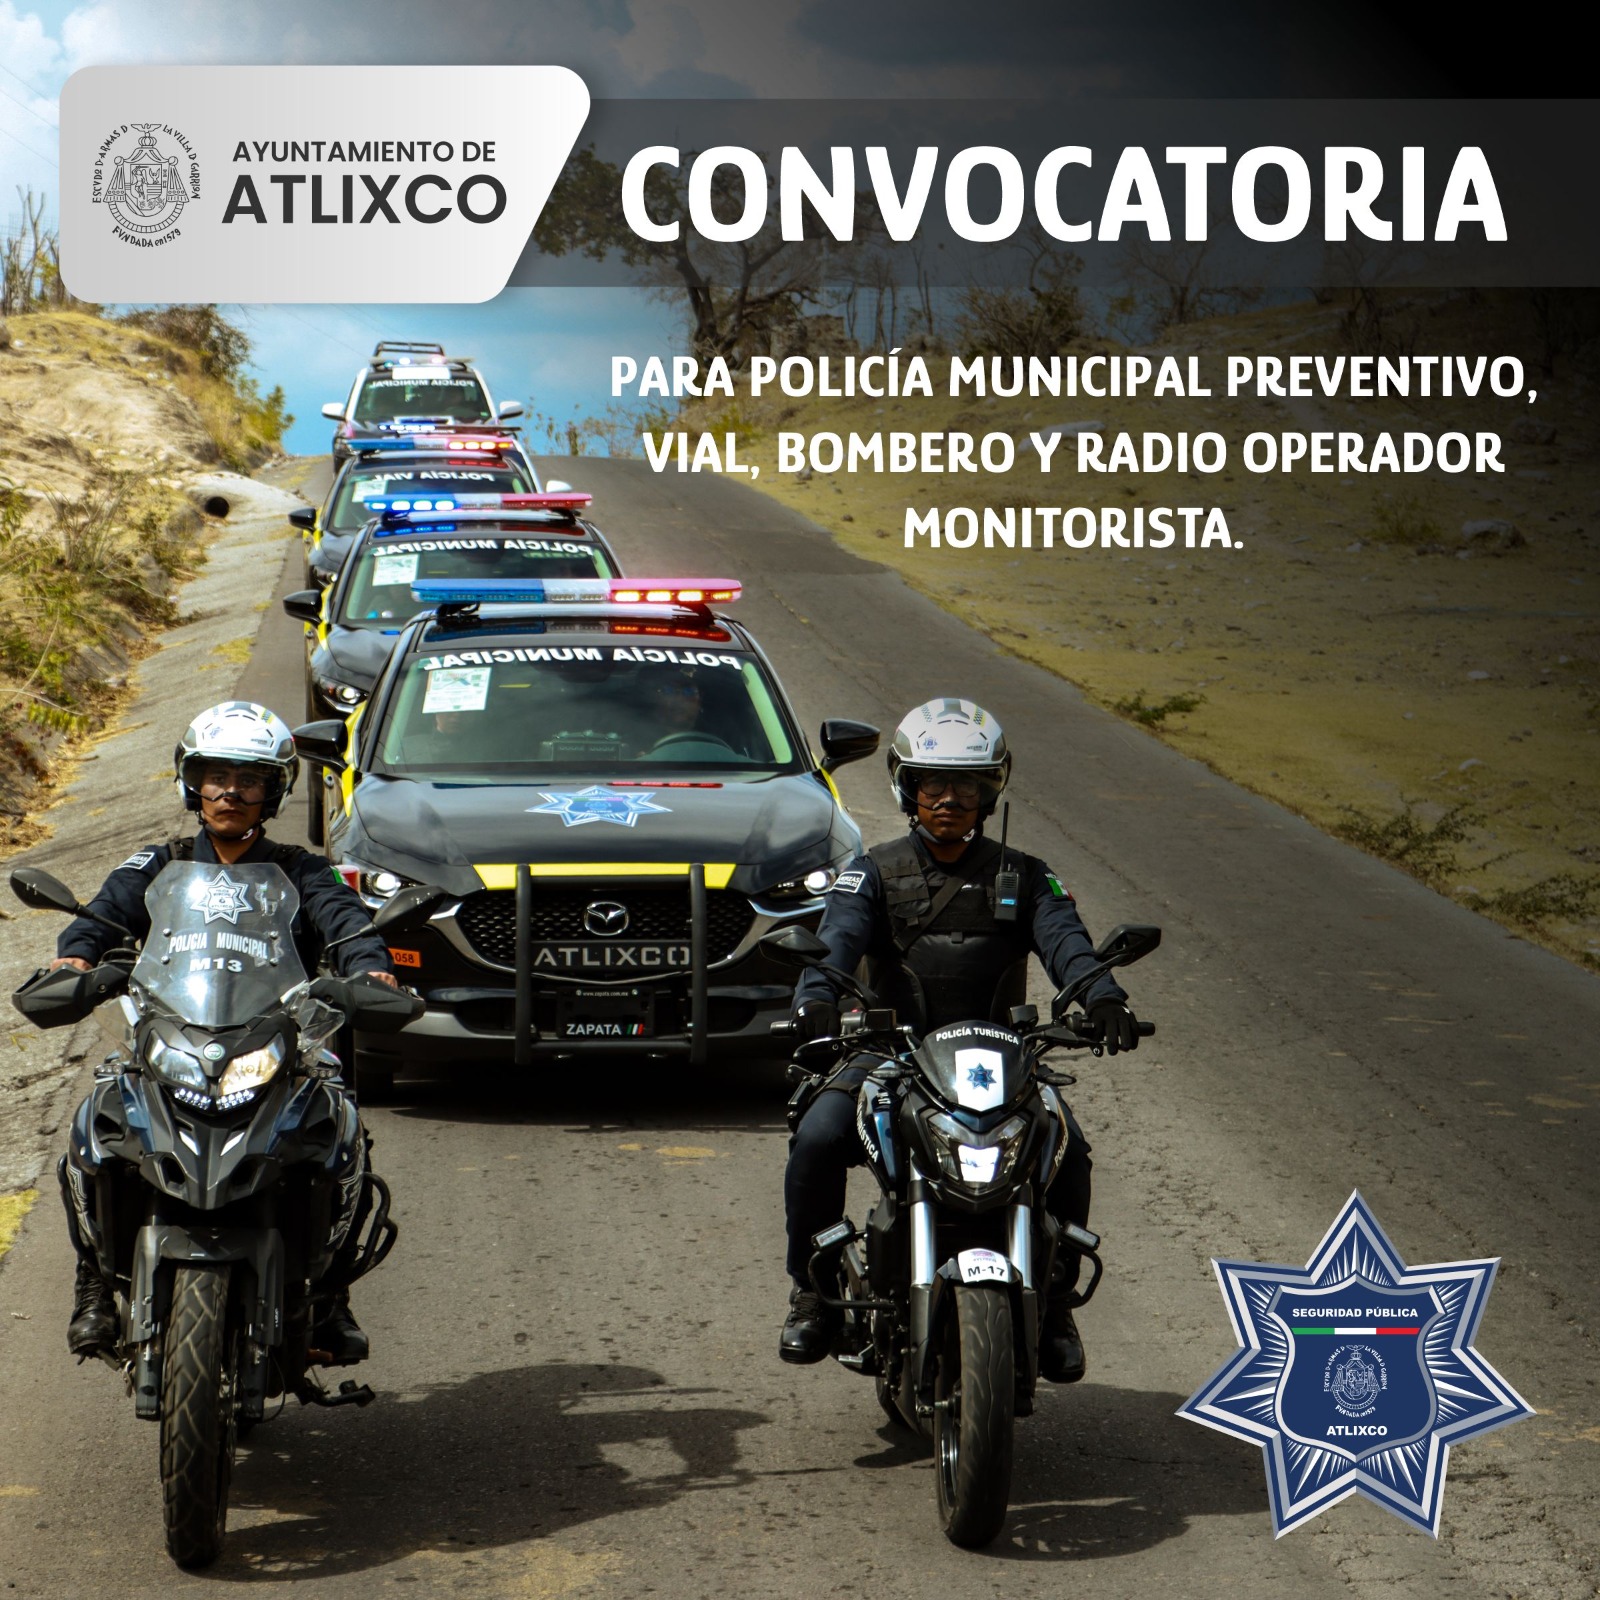 SSP de Atlixco mantiene abierta convocatoria para radio operador o policía municipal preventivo